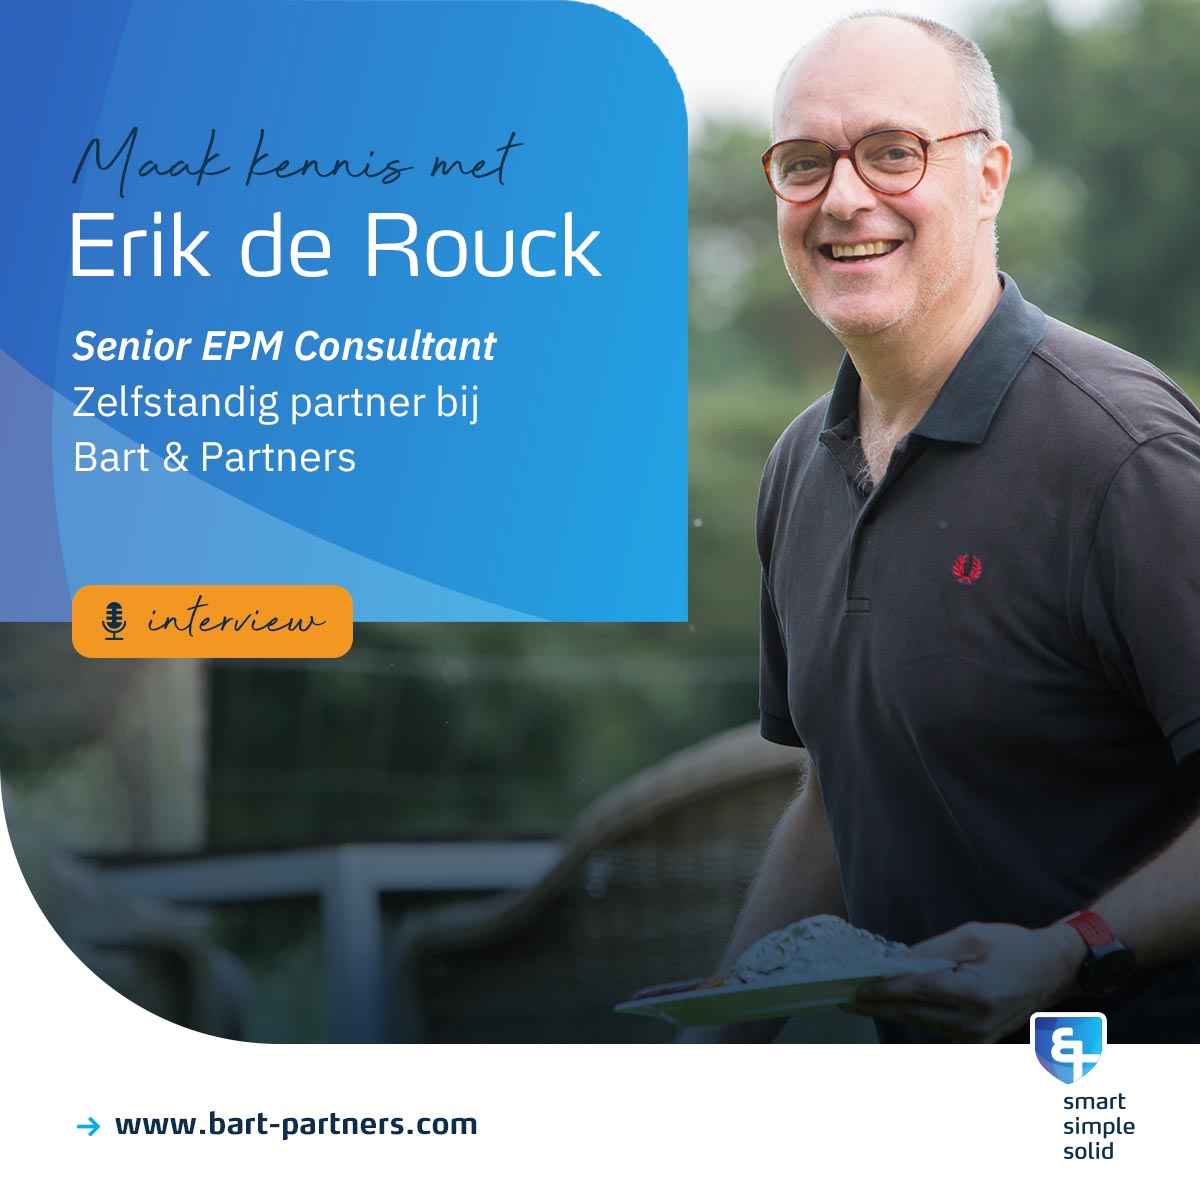 Maak kennis met onze Vlaamse collega Erik de Rouck, zelfstandig partner bij Bart & Partners